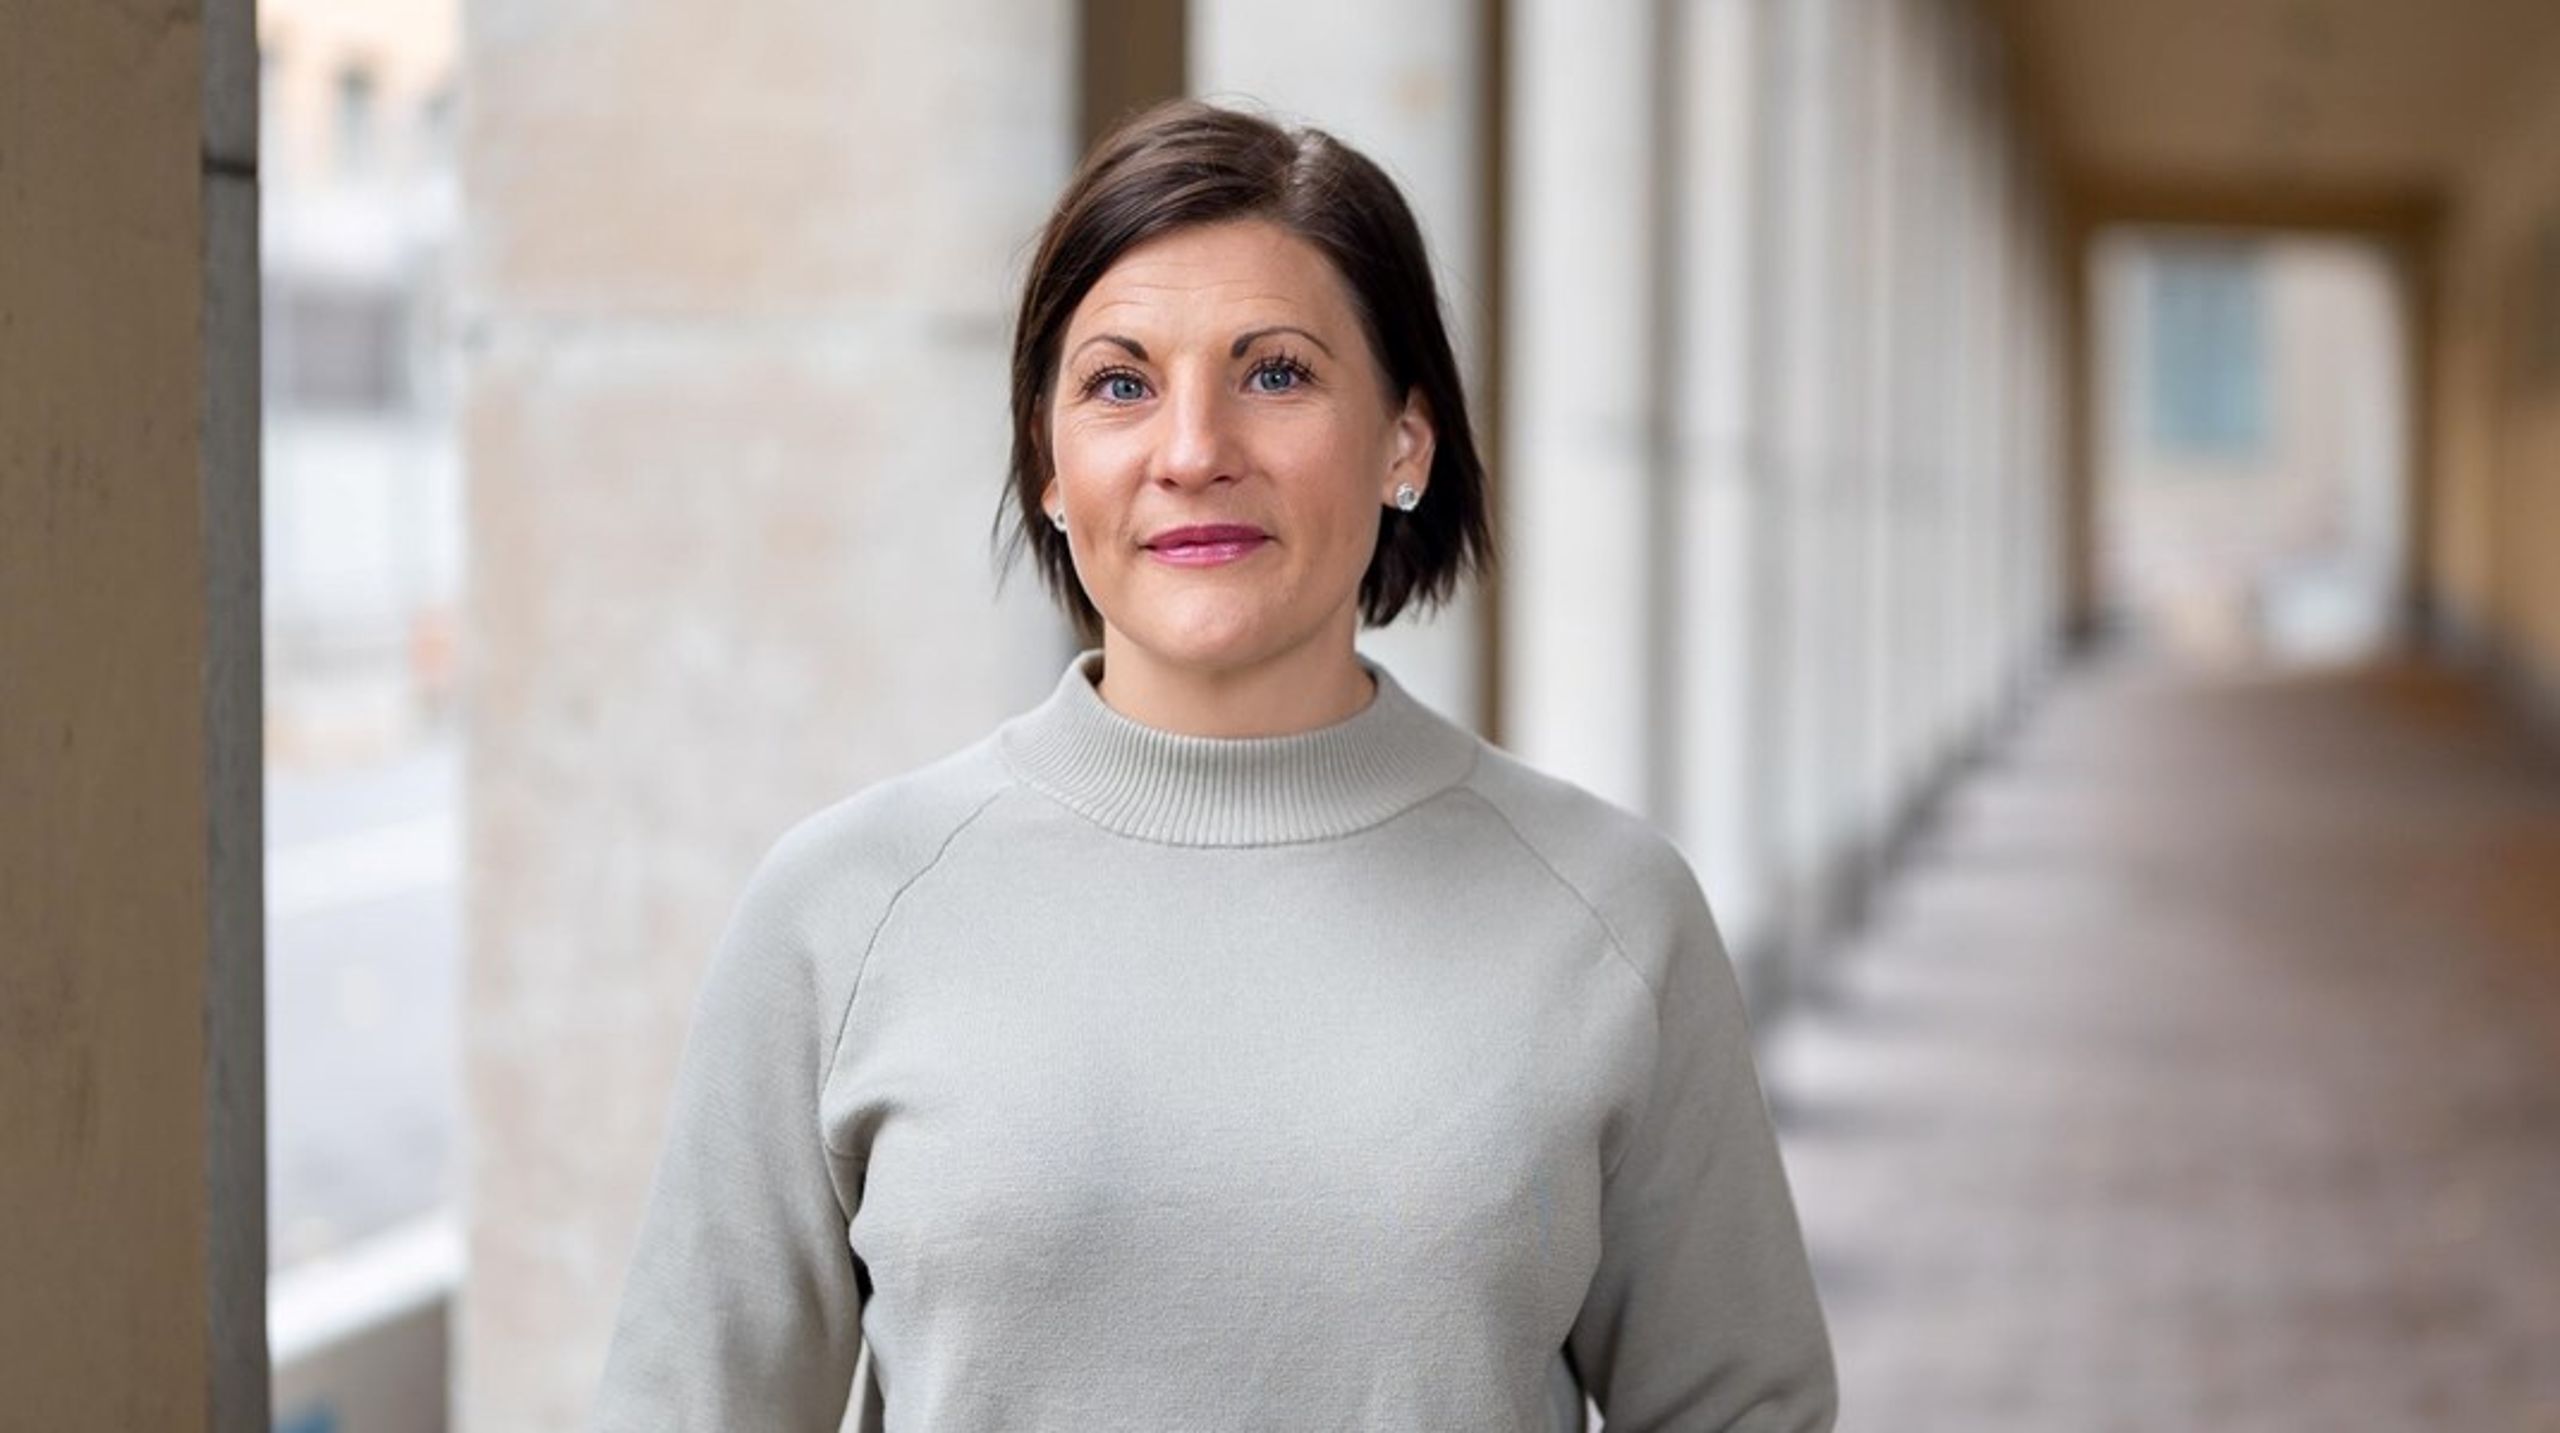 Centerpartiets Sofia Nilsson har suttit i riksdagen sedan 2018 och blev i somras utsedd till en av vårdens mäktigaste av tidningen Dagens Medicin.